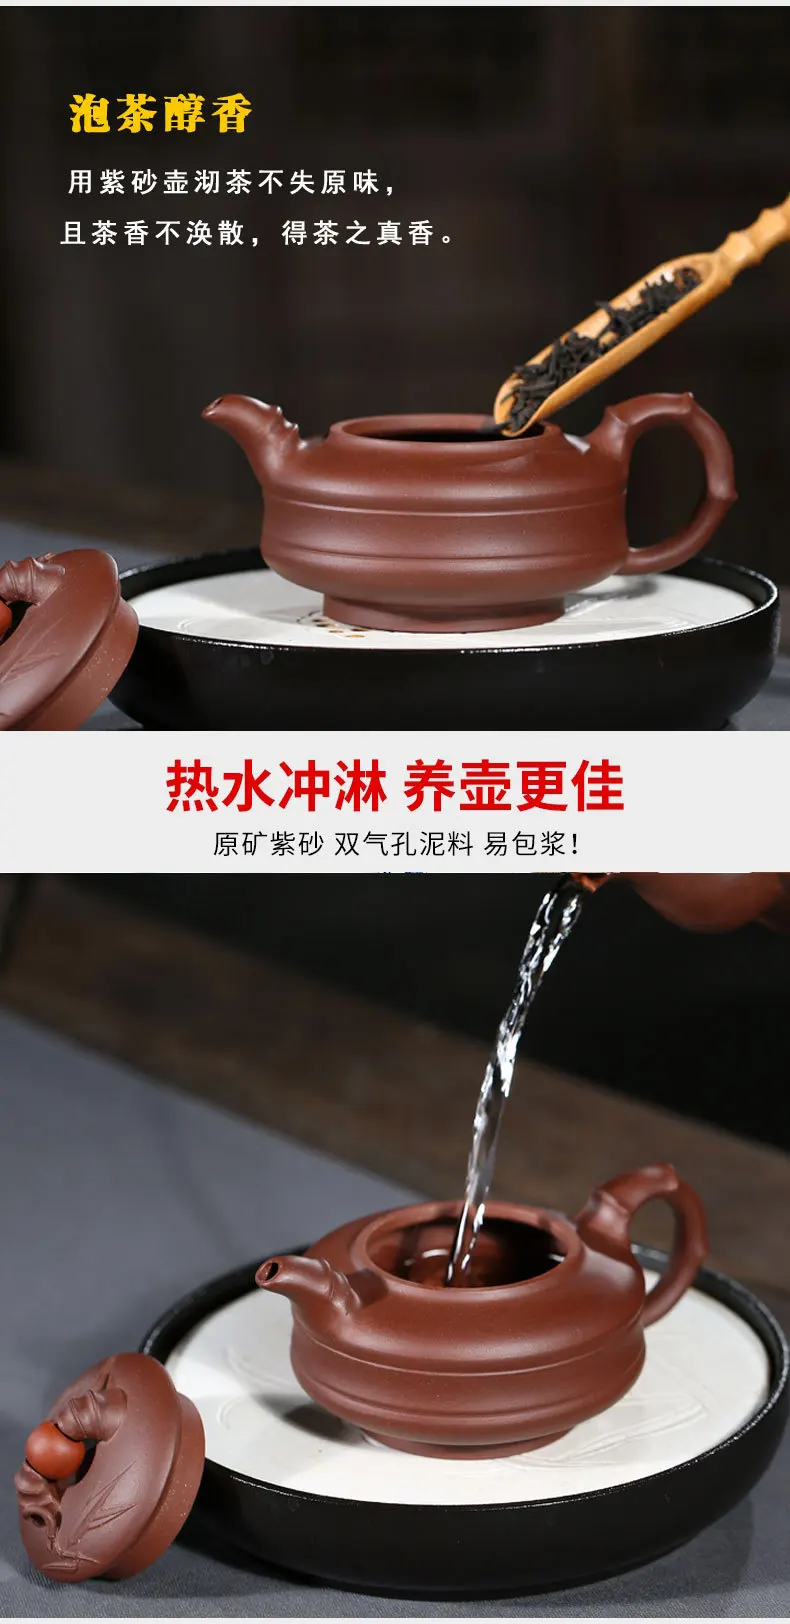 Знаменитый yixing artisan фиолетовая глина фиолетовый металлический пурпурный глина для запуска Фиолетовый Глиняный заварочный чайник чайные наборы на заказ подарочные наборы